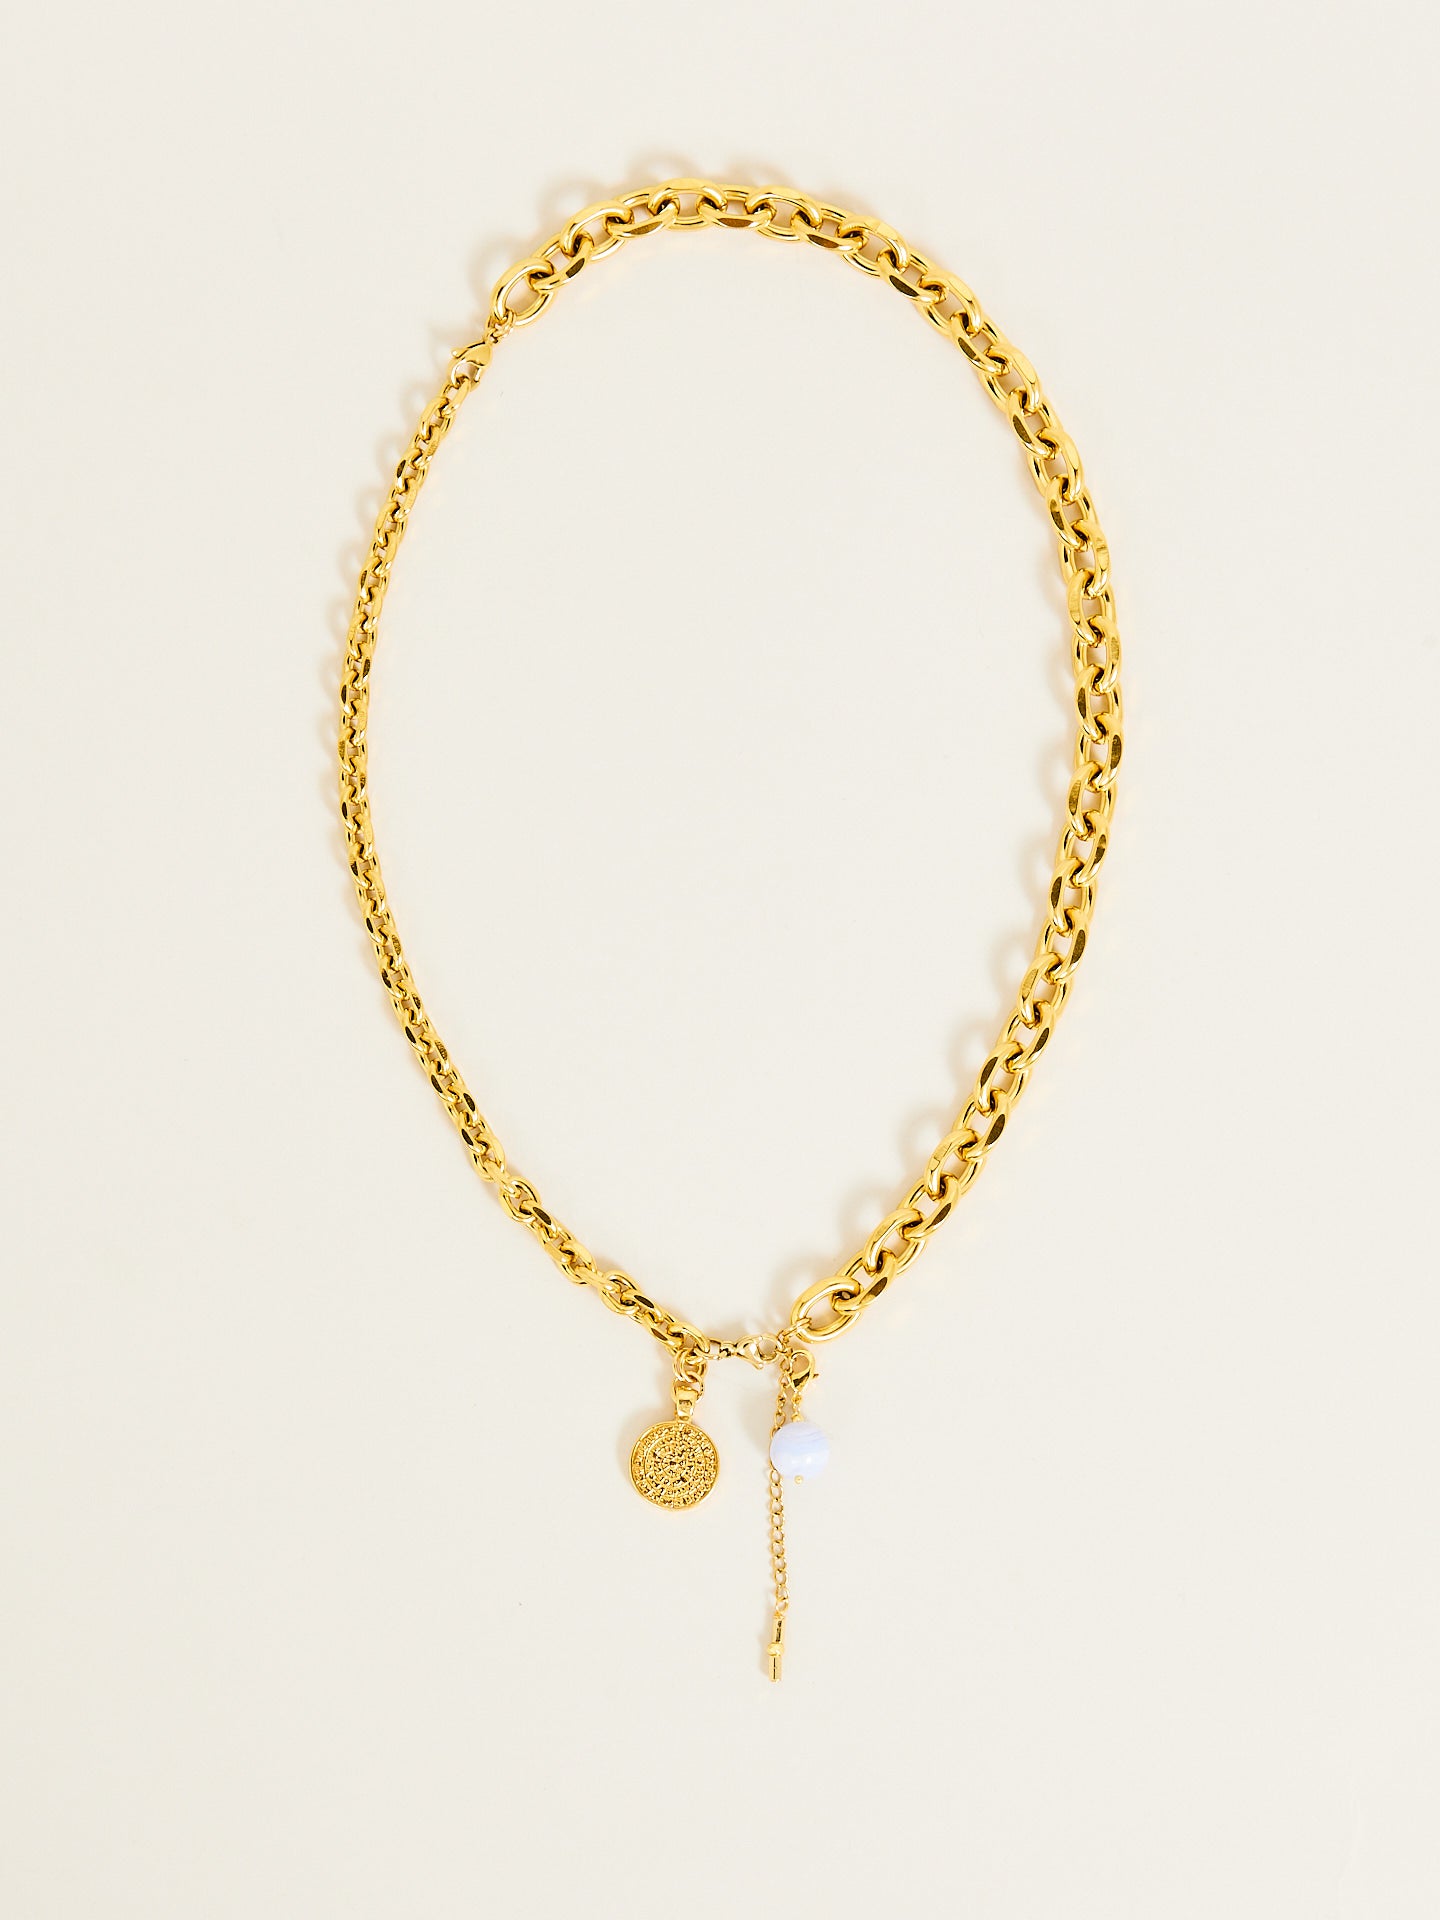 Goldene Halskette mit Münze und Perle als Anhänger.